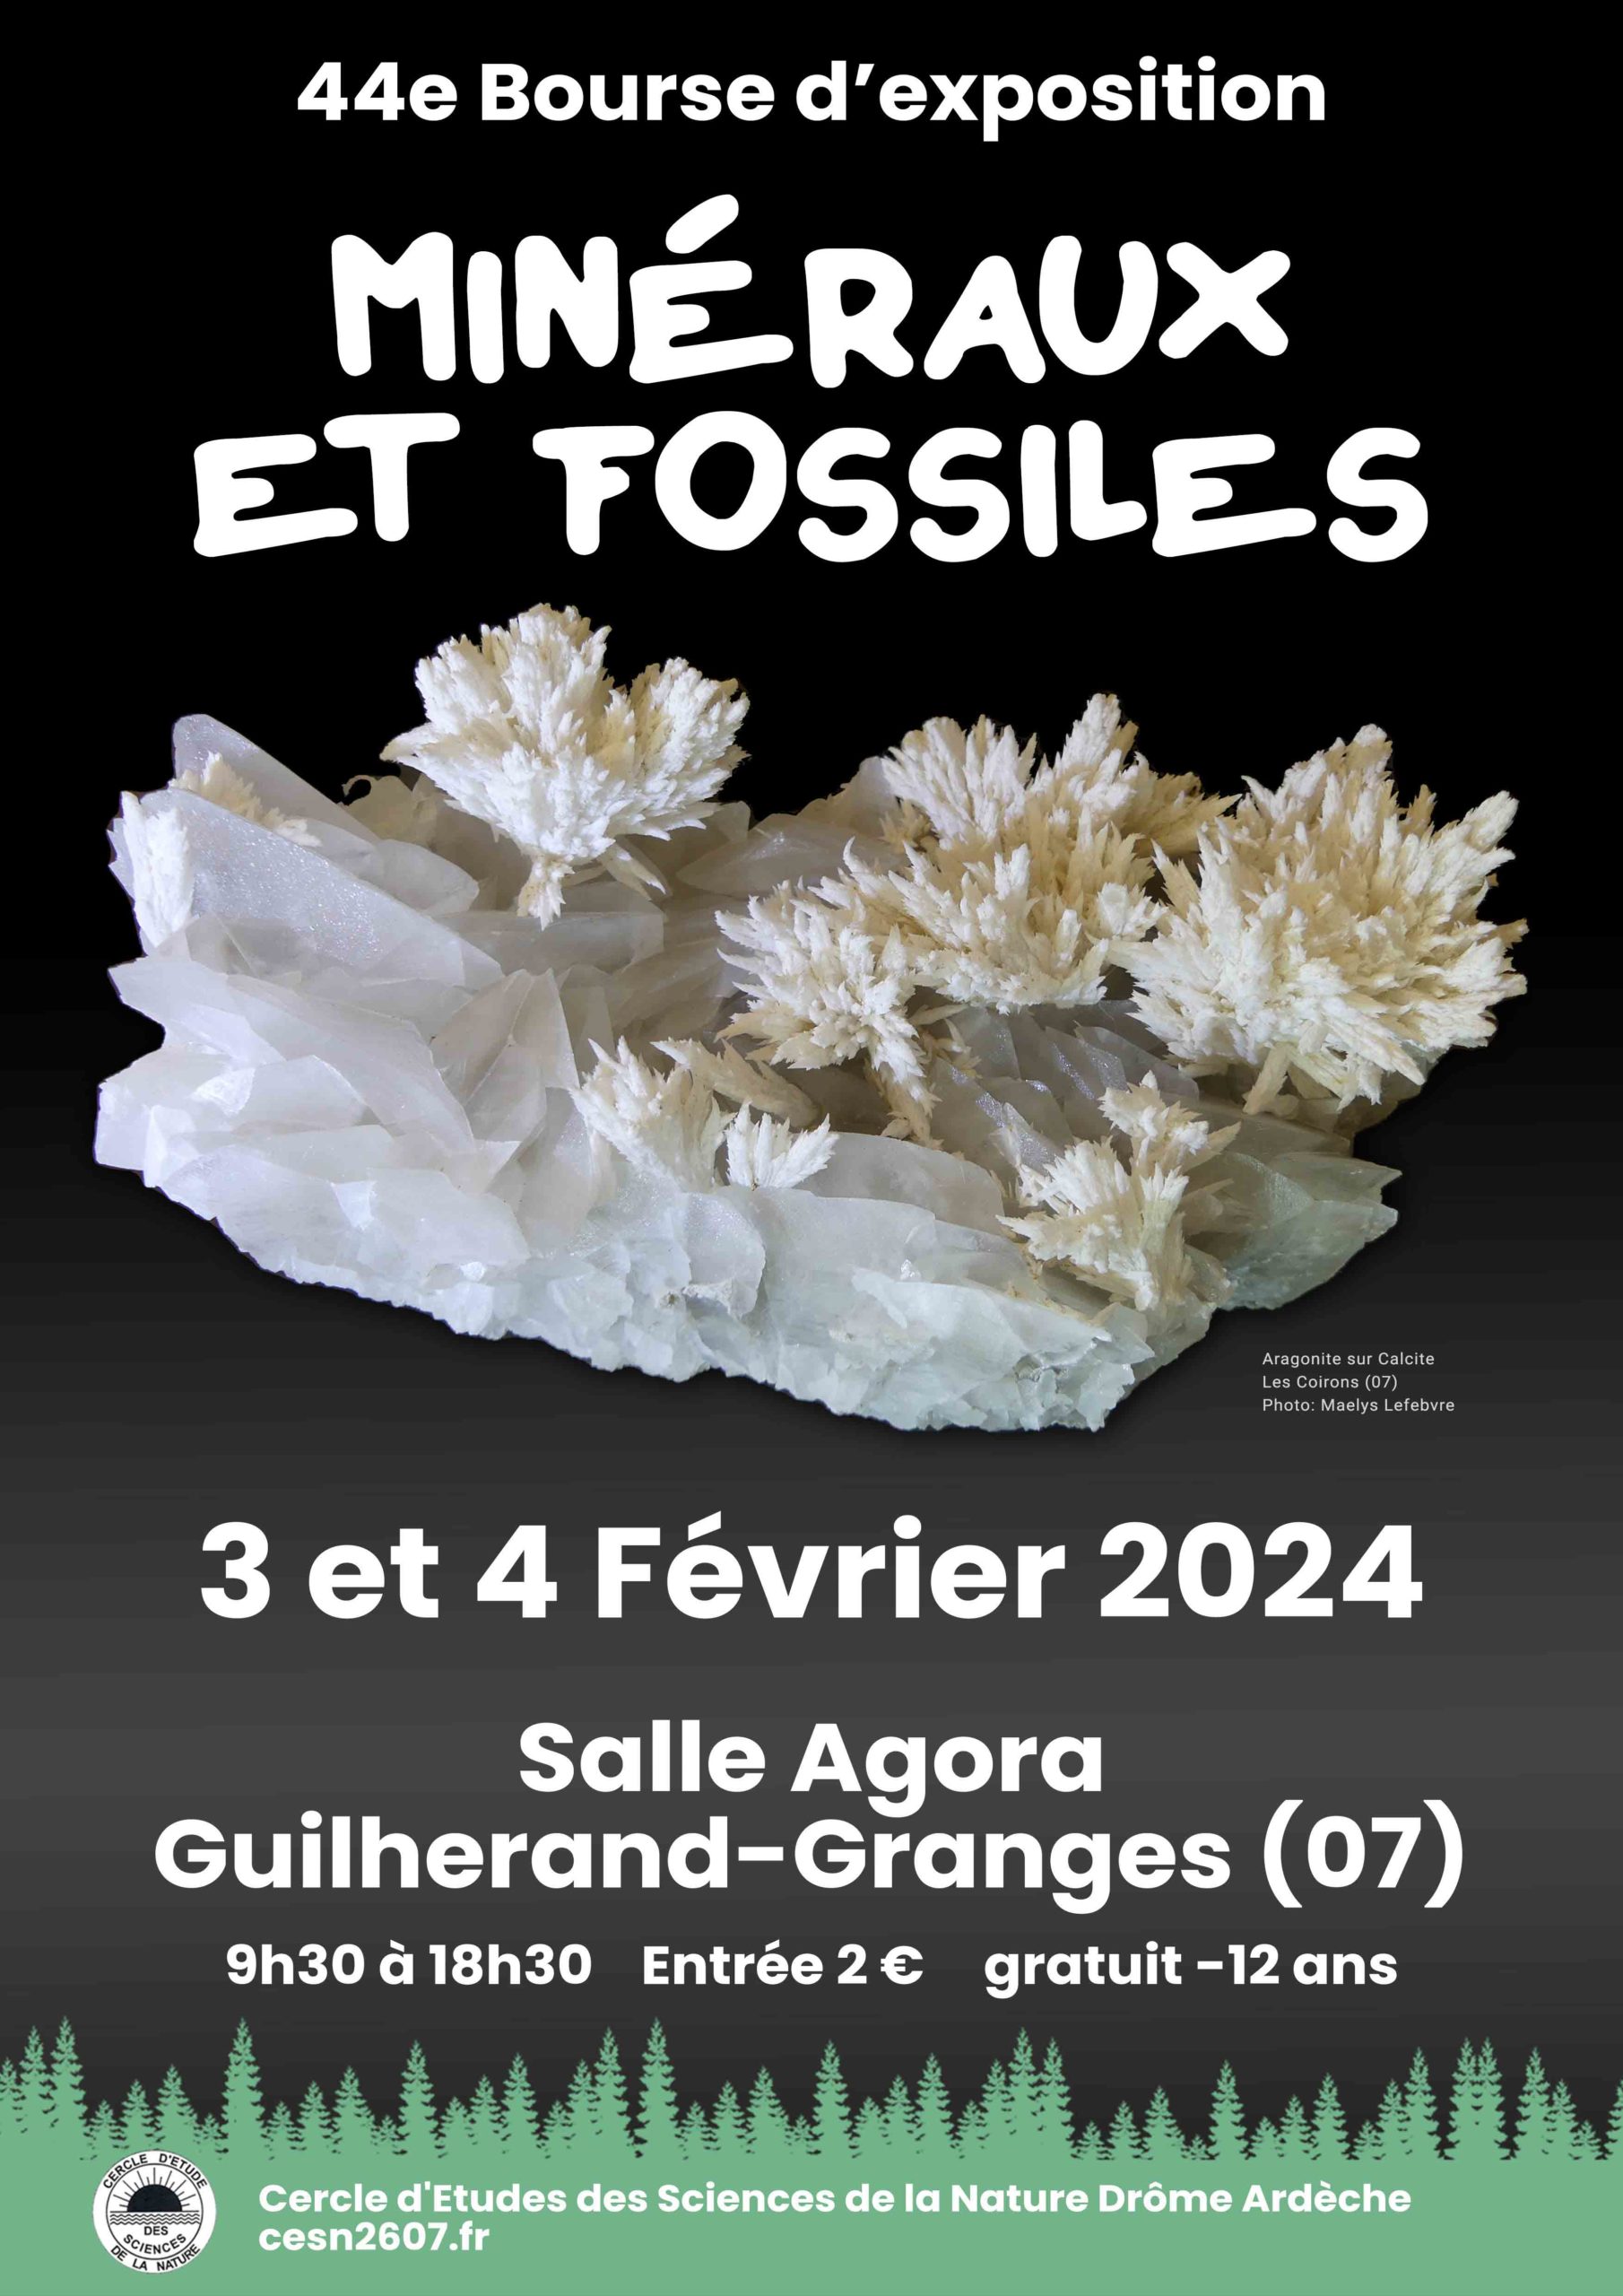 Bourse exposition de Guilherand-Granges 3 et 4 février 2024